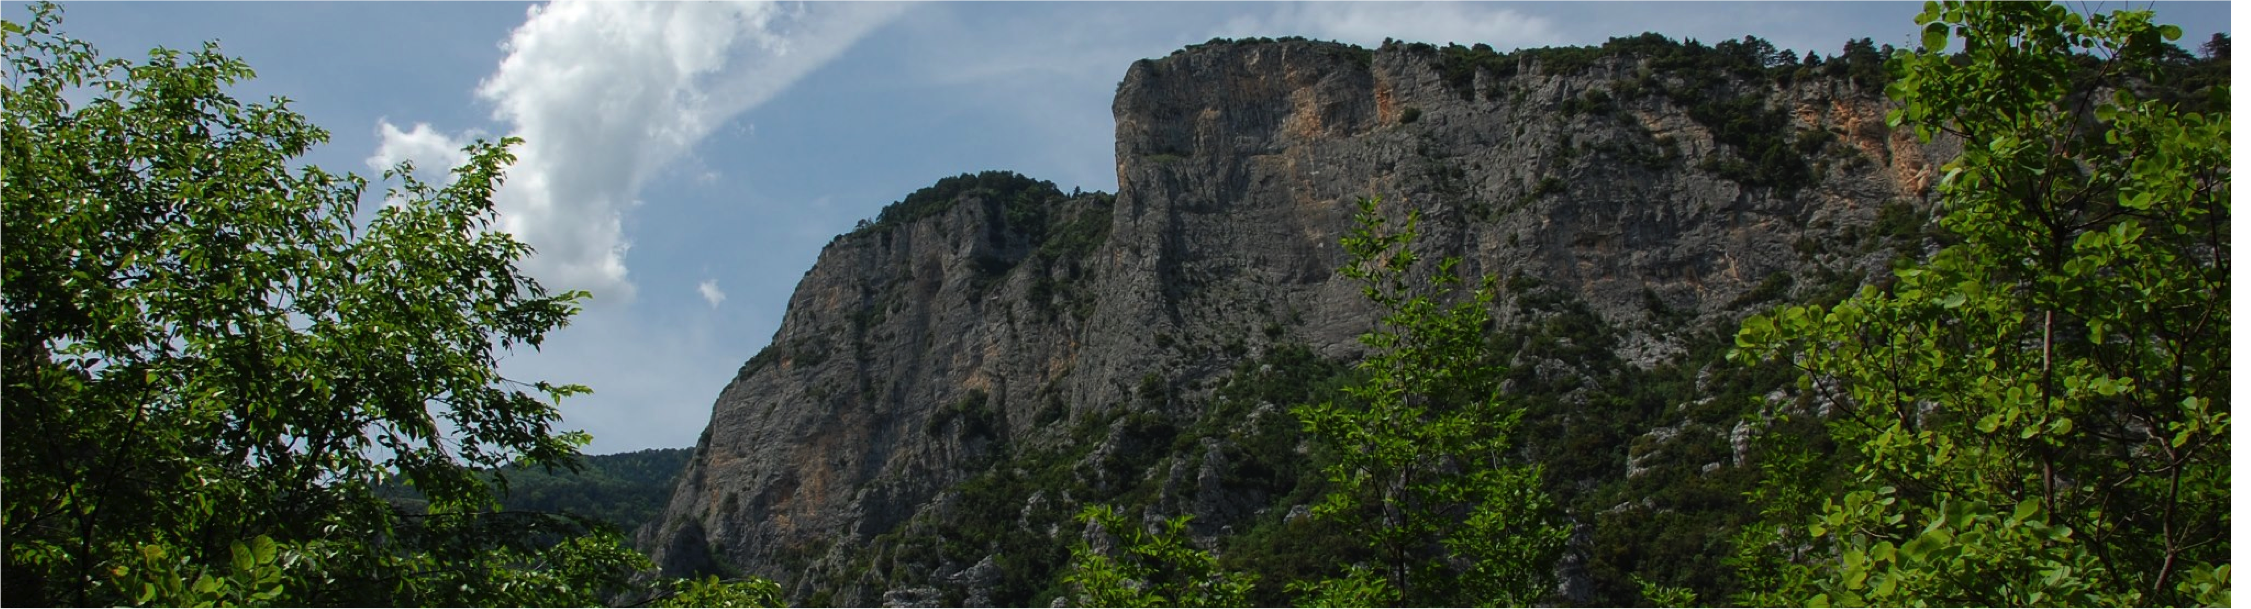 Landscape near Mt. Olympus, Greece